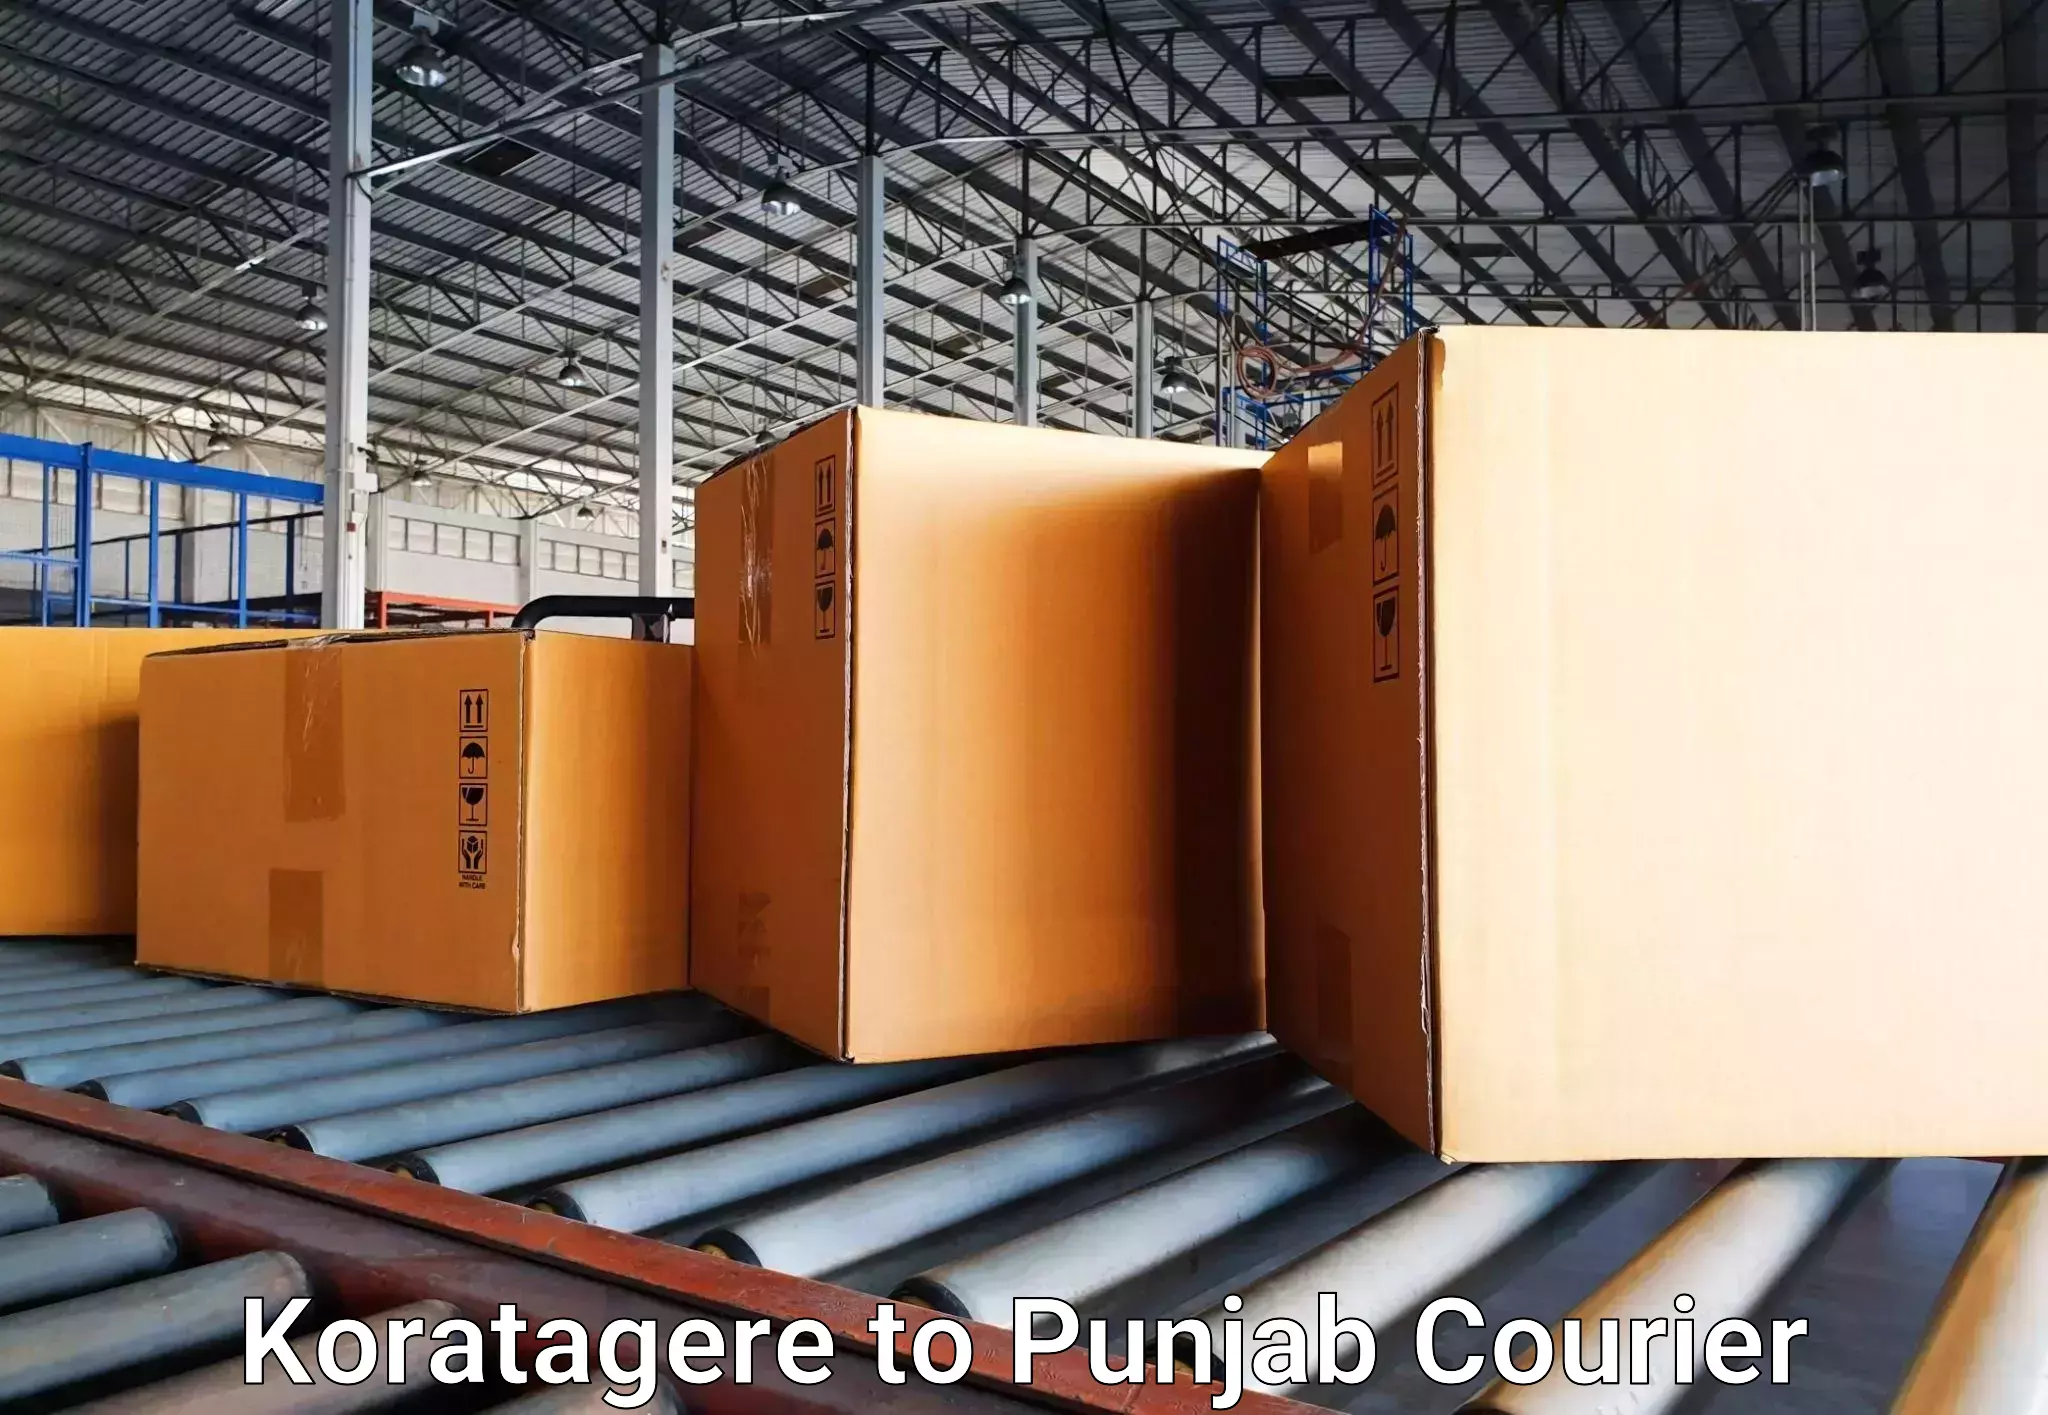 Luggage shipping estimate Koratagere to Central University of Punjab Bathinda